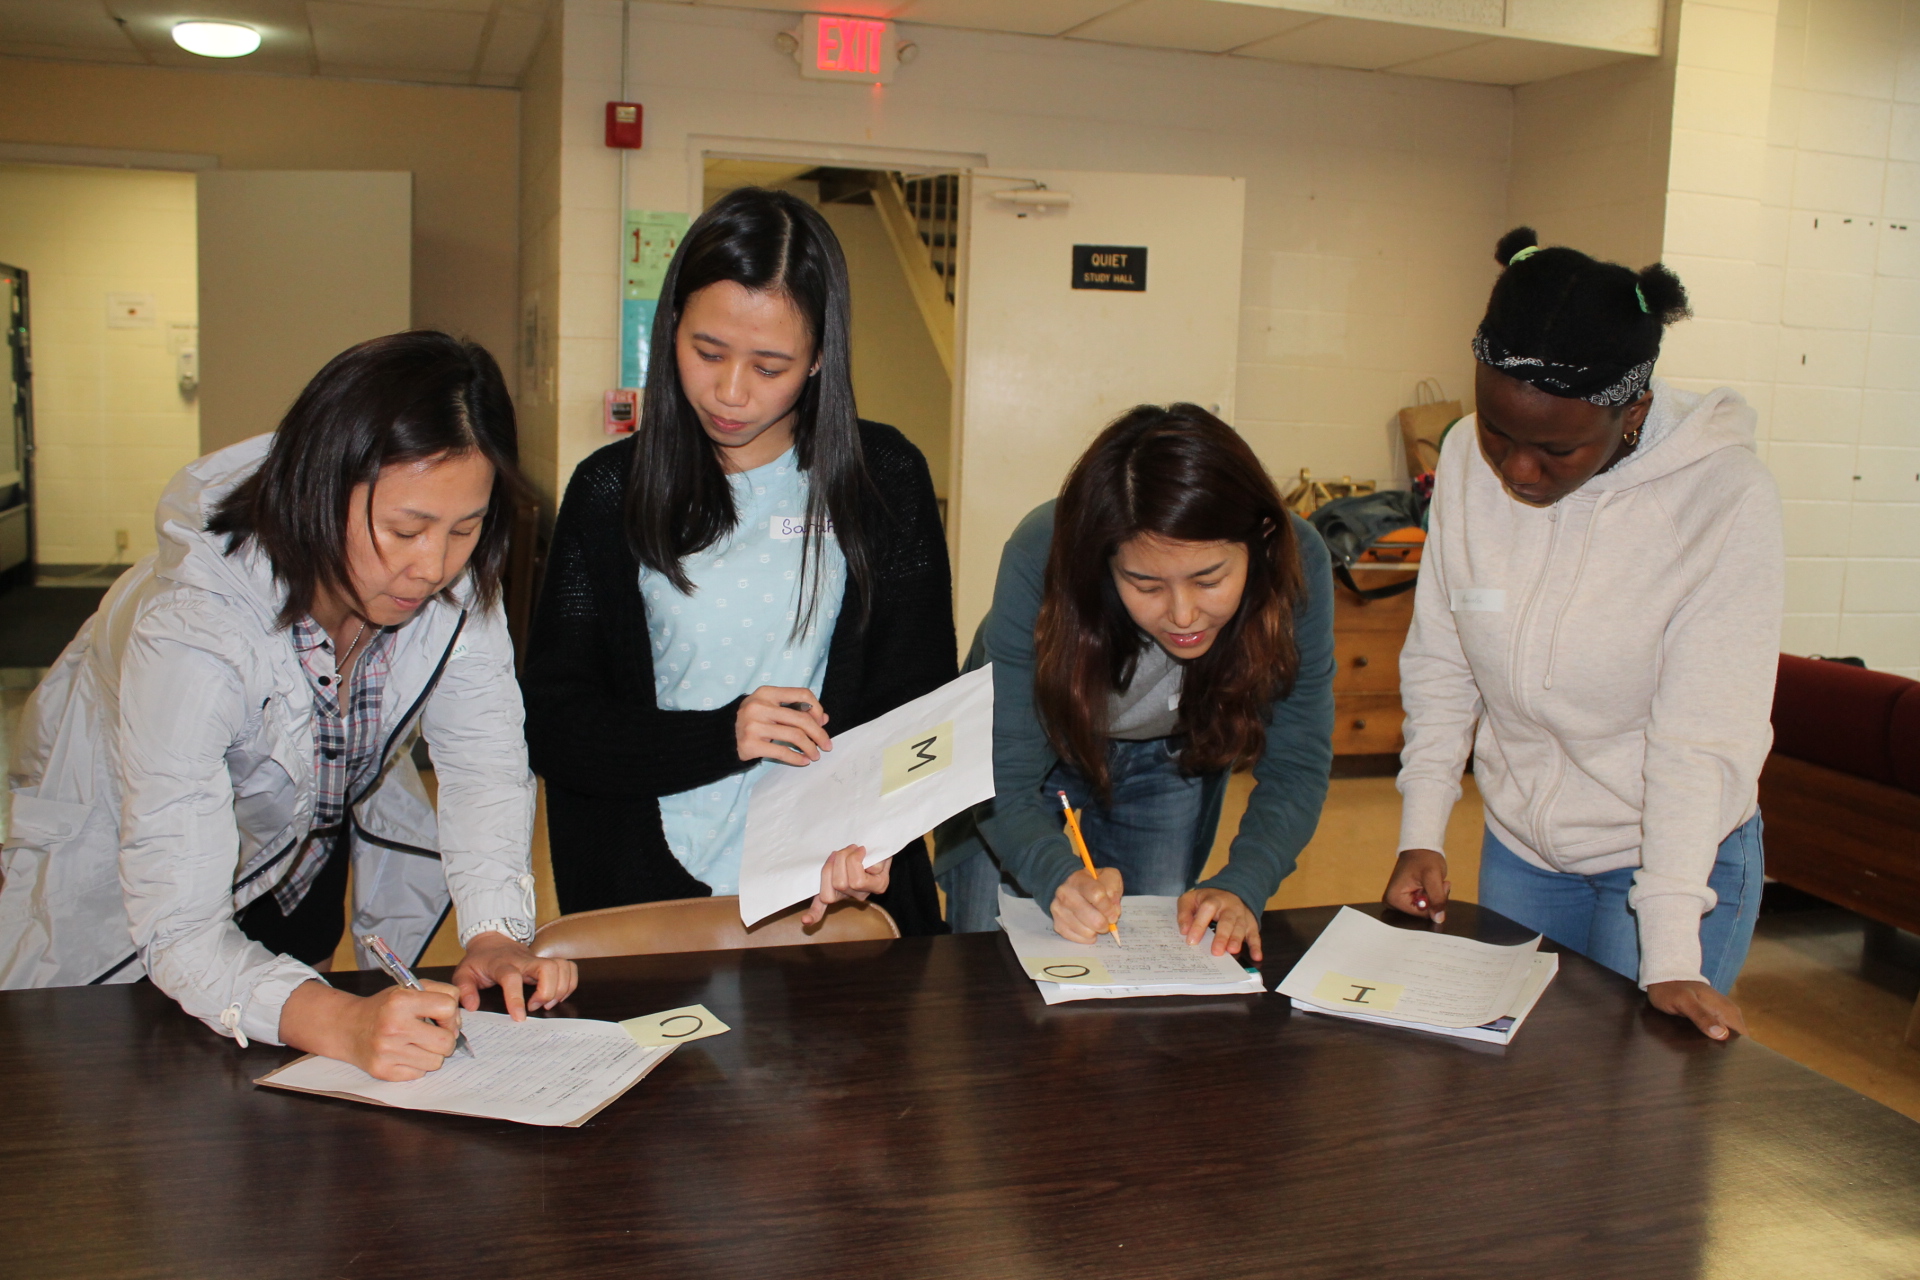 德州国际教育联盟项目参与者做作业的照片.